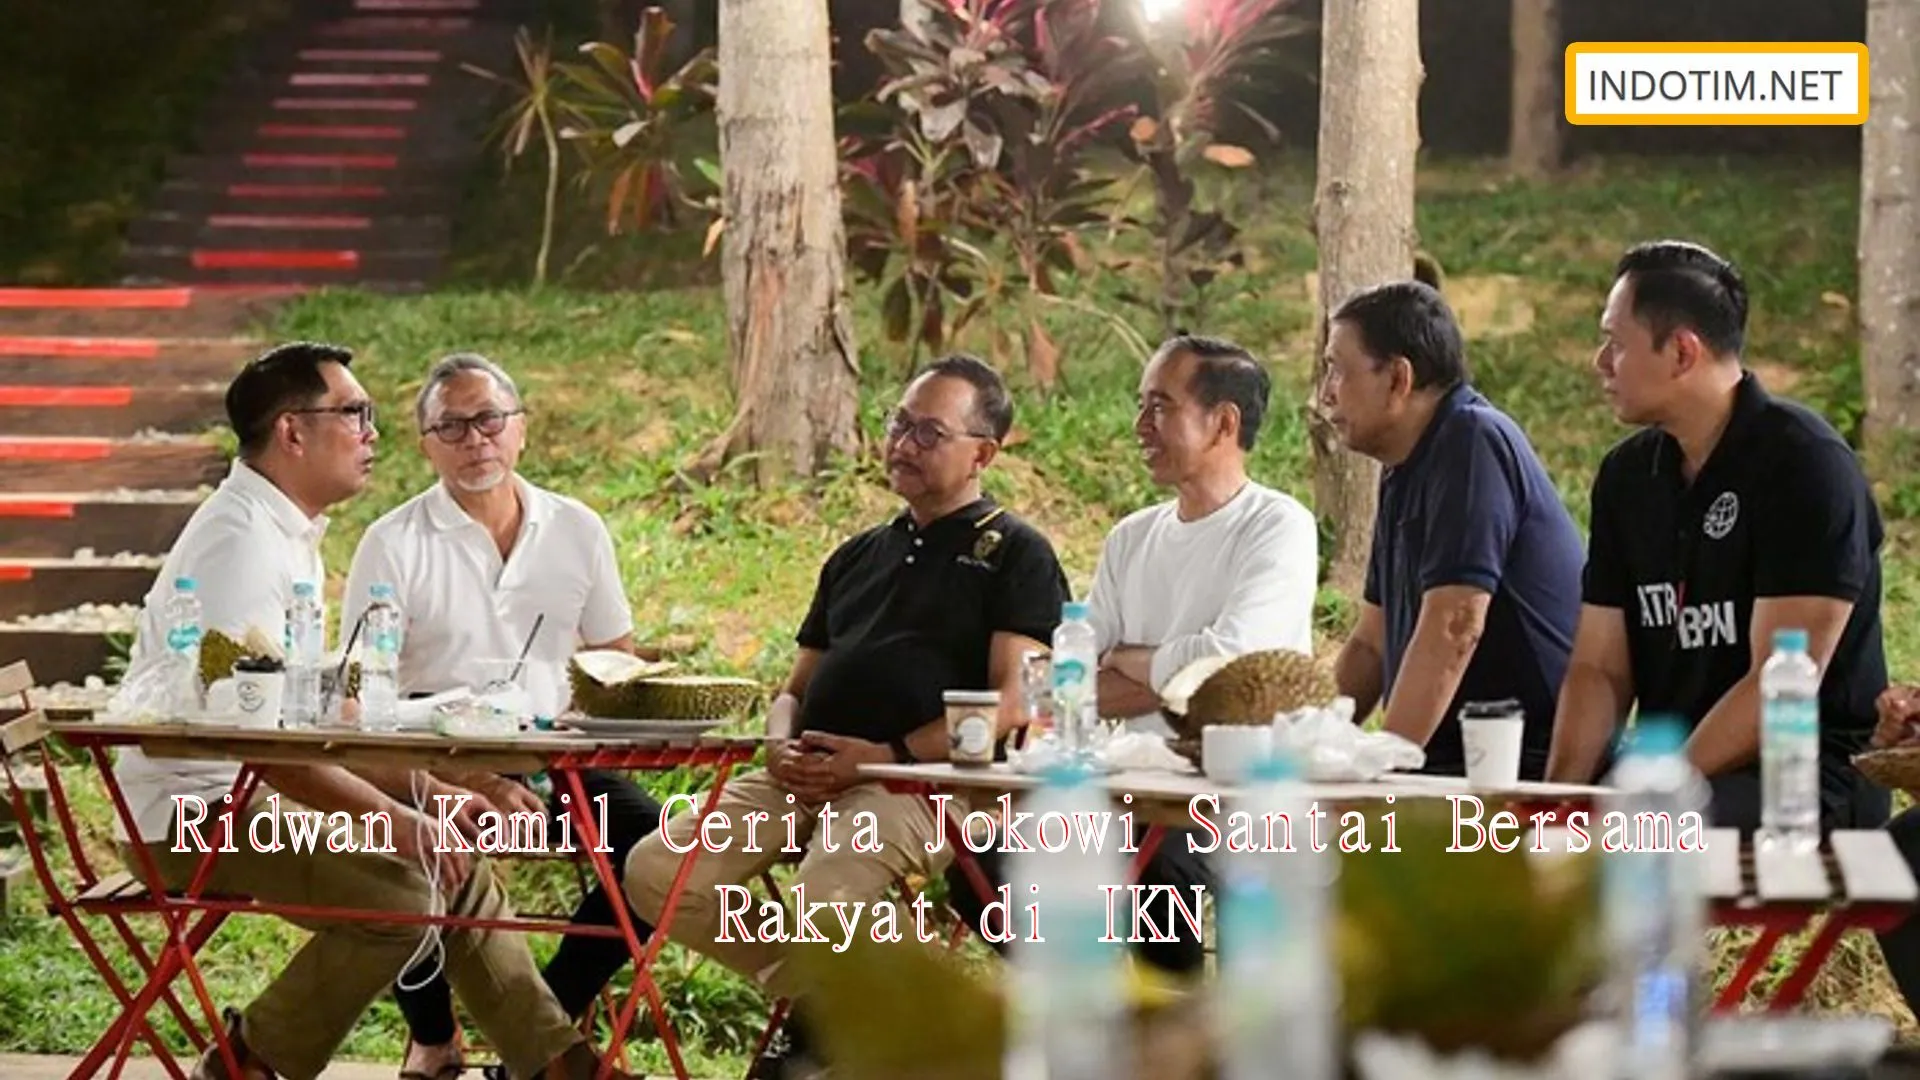 Ridwan Kamil Cerita Jokowi Santai Bersama Rakyat di IKN